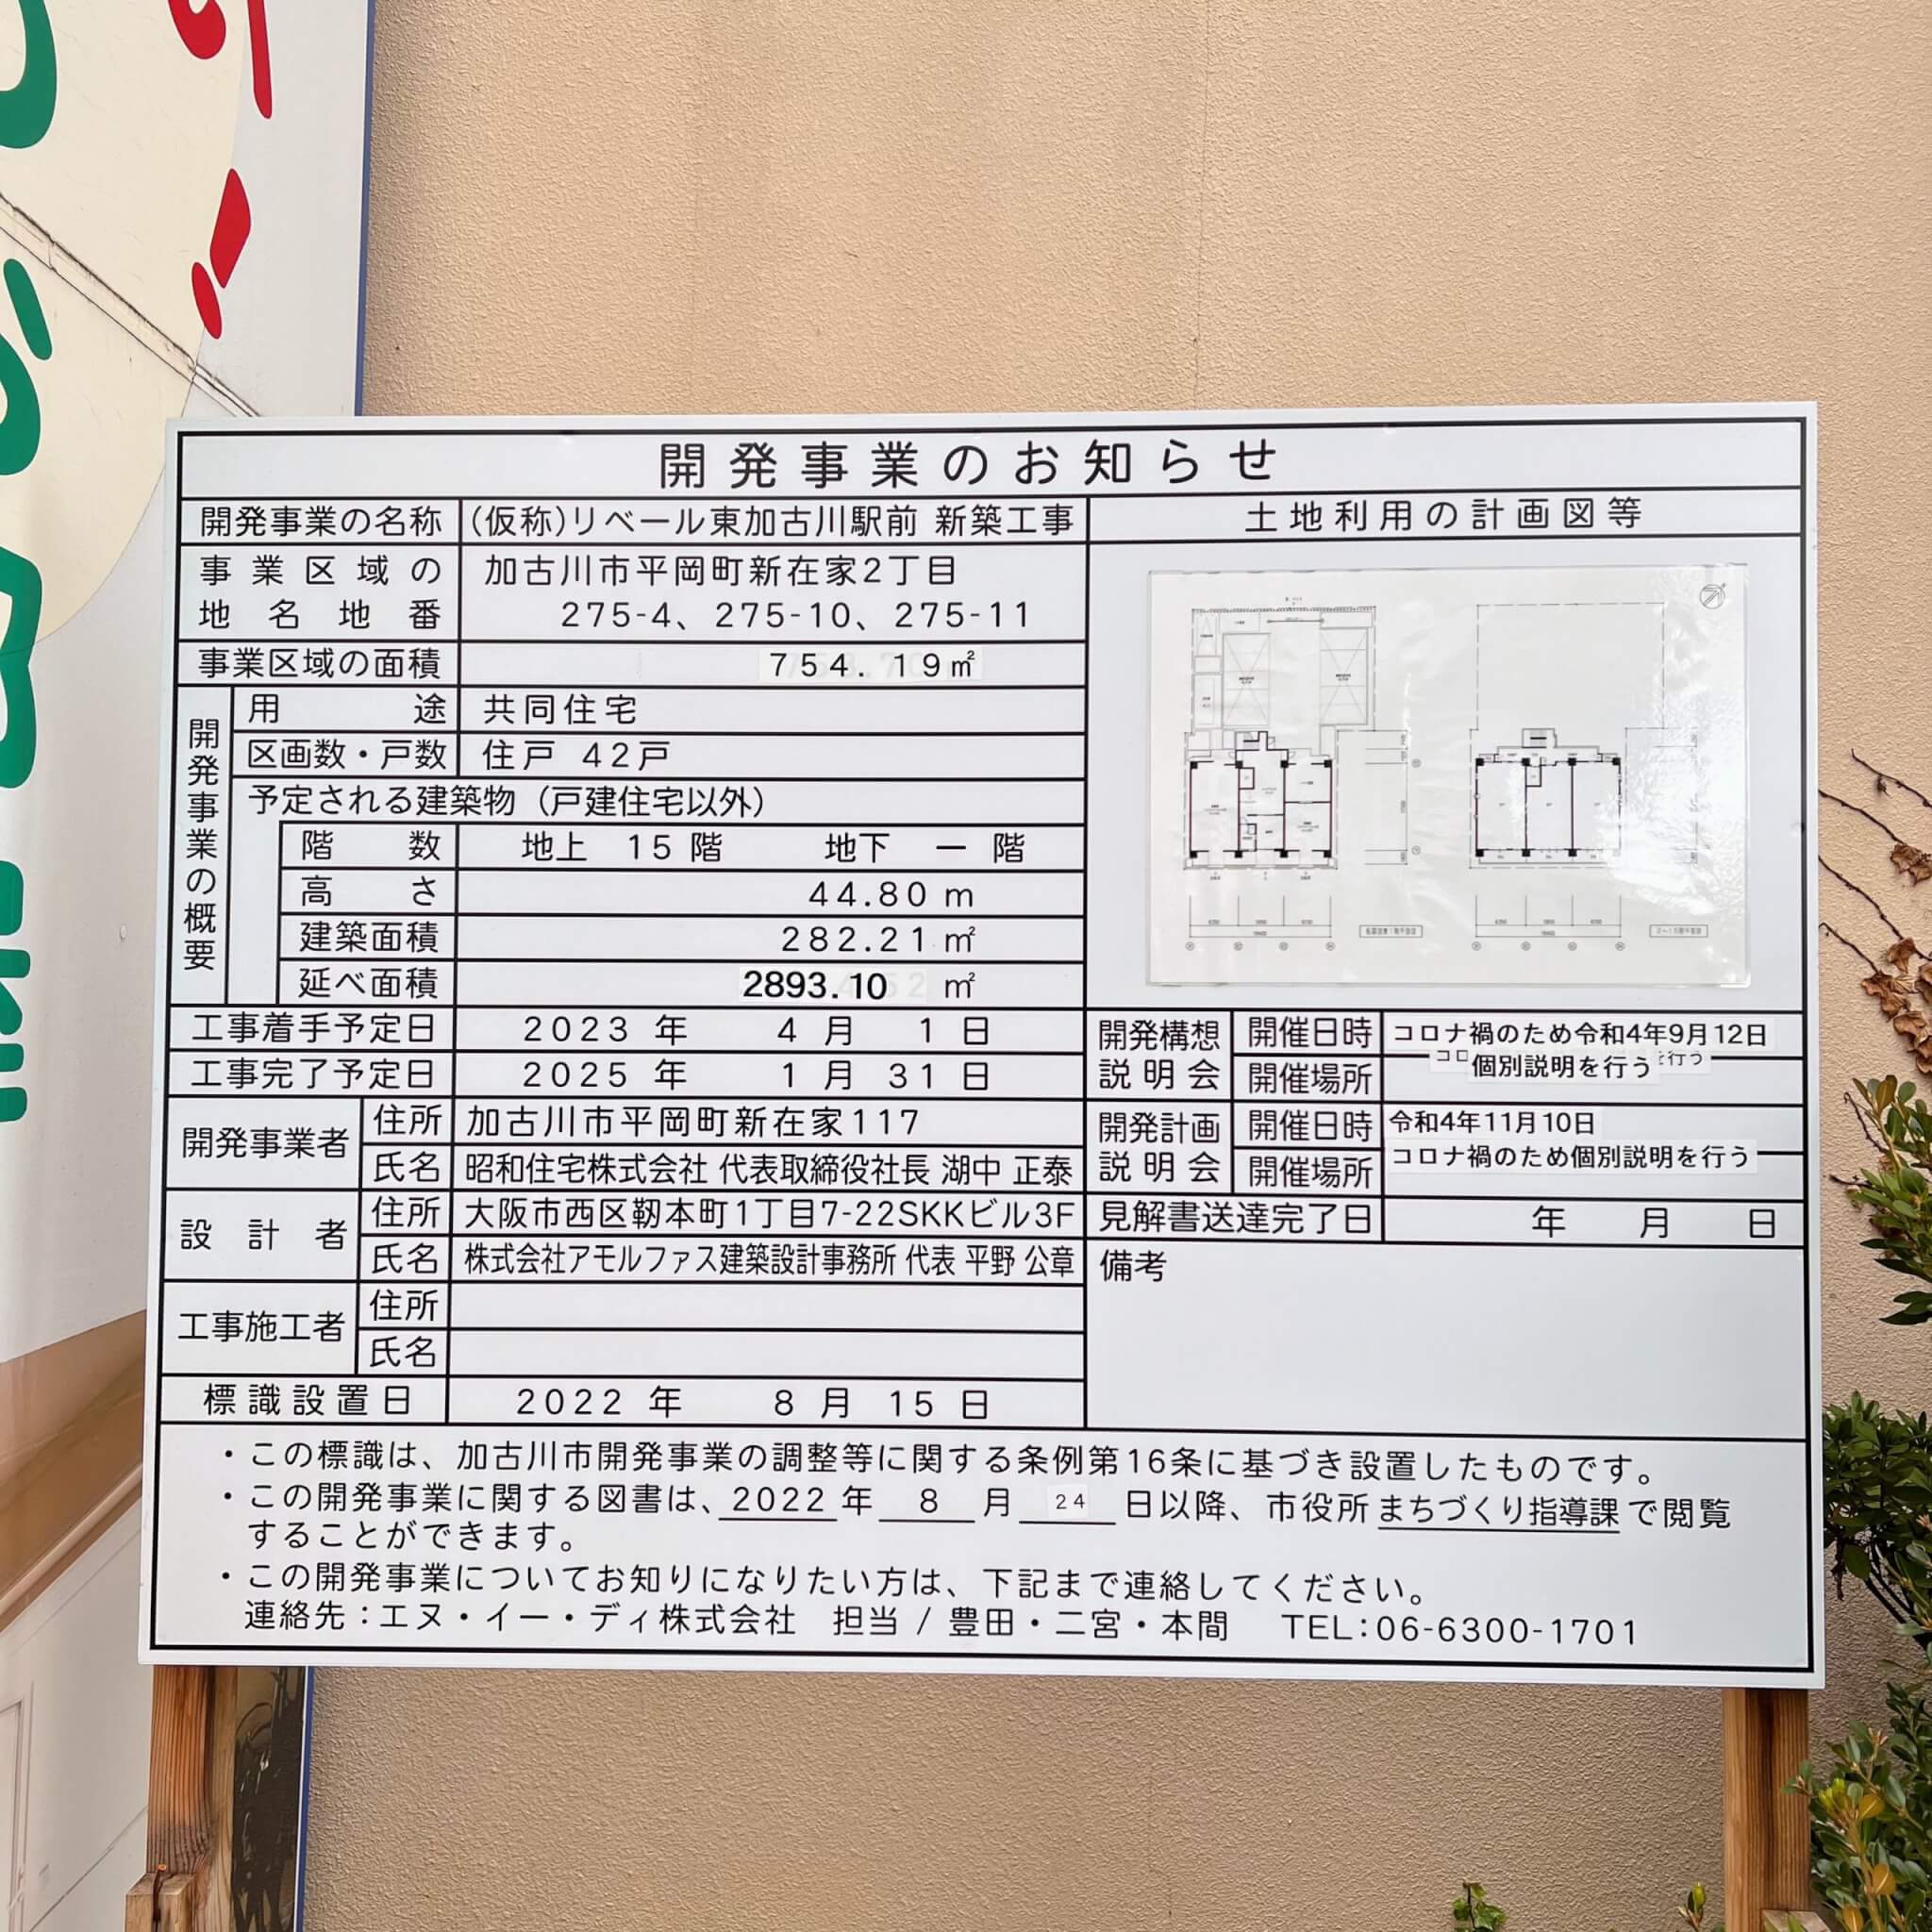 （仮称）リベール東加古川駅前新築工事の開発事業のお知らせ。2022年12月14日撮影